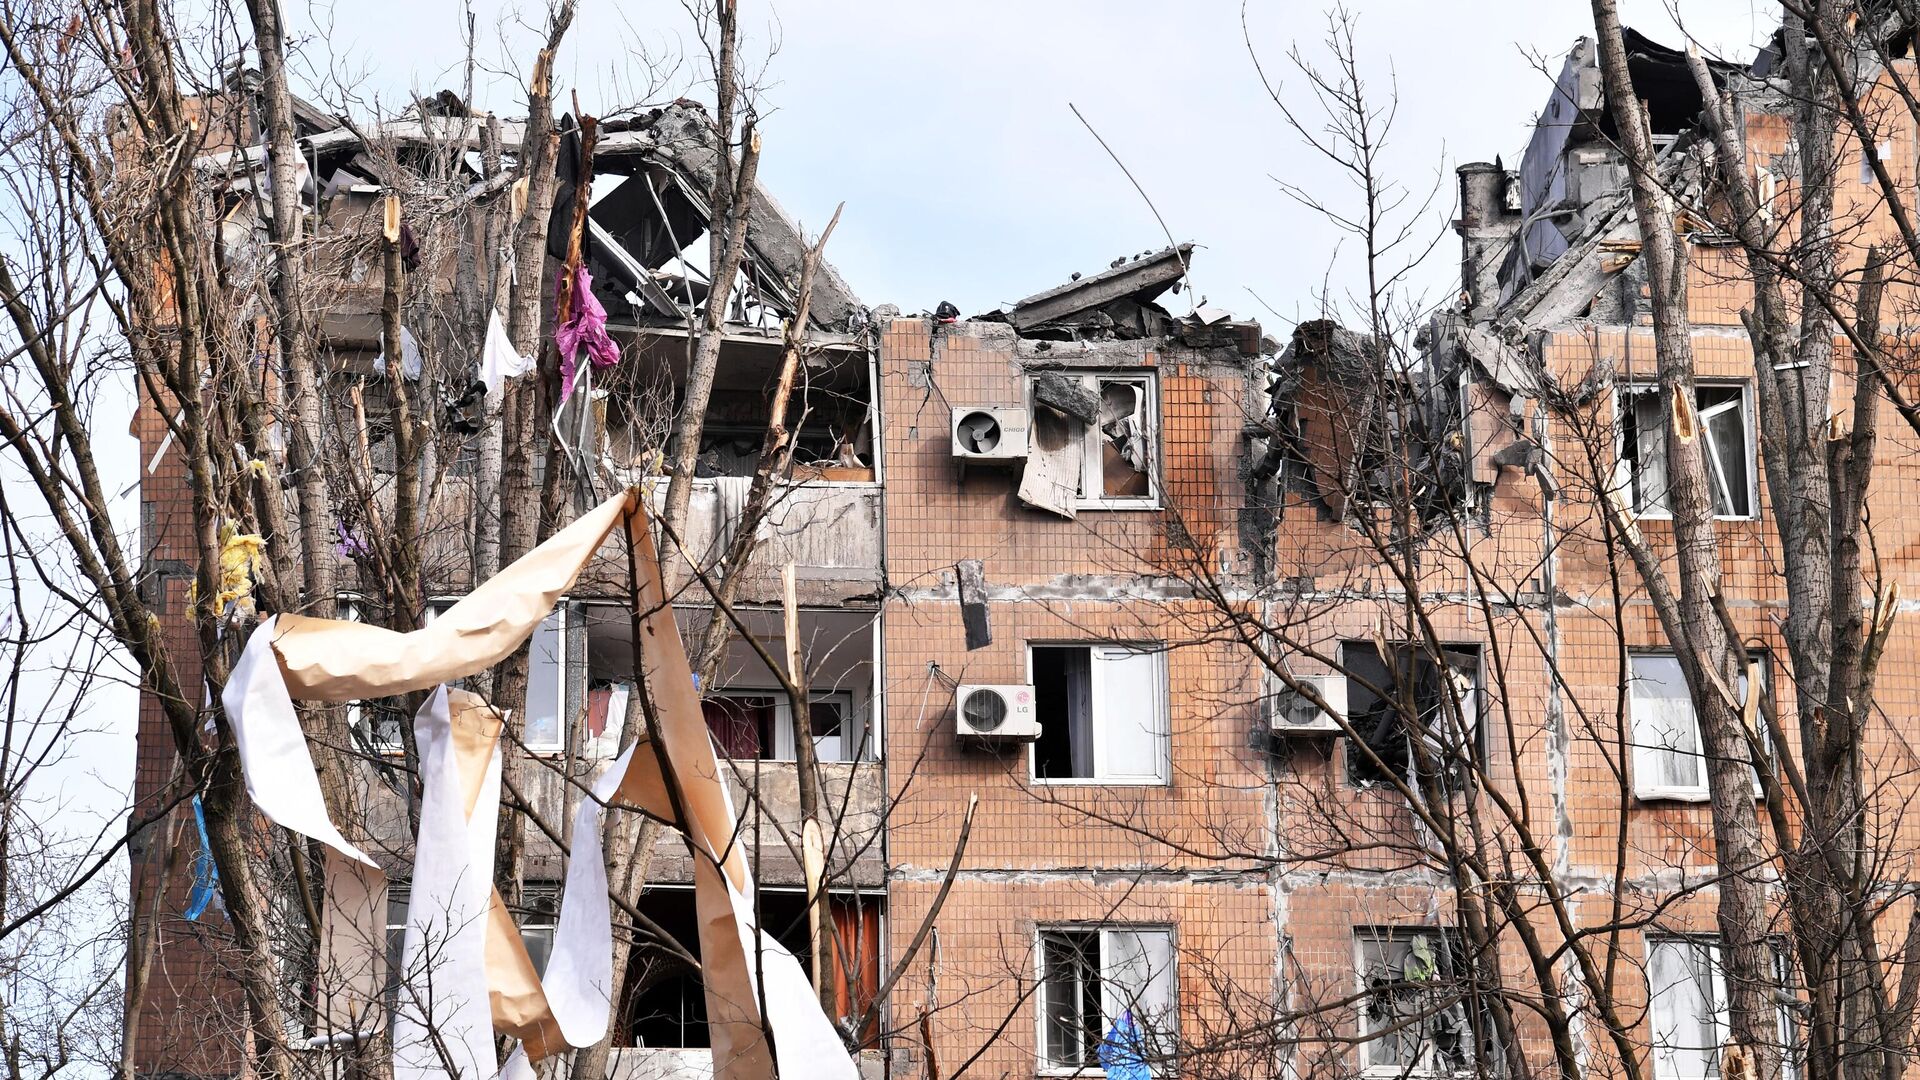 Жилой дом на улице Пинтера в Донецке, пострадавший в результате обрушения крыши после обстрела украинскими войсками - РИА Новости, 1920, 12.04.2022